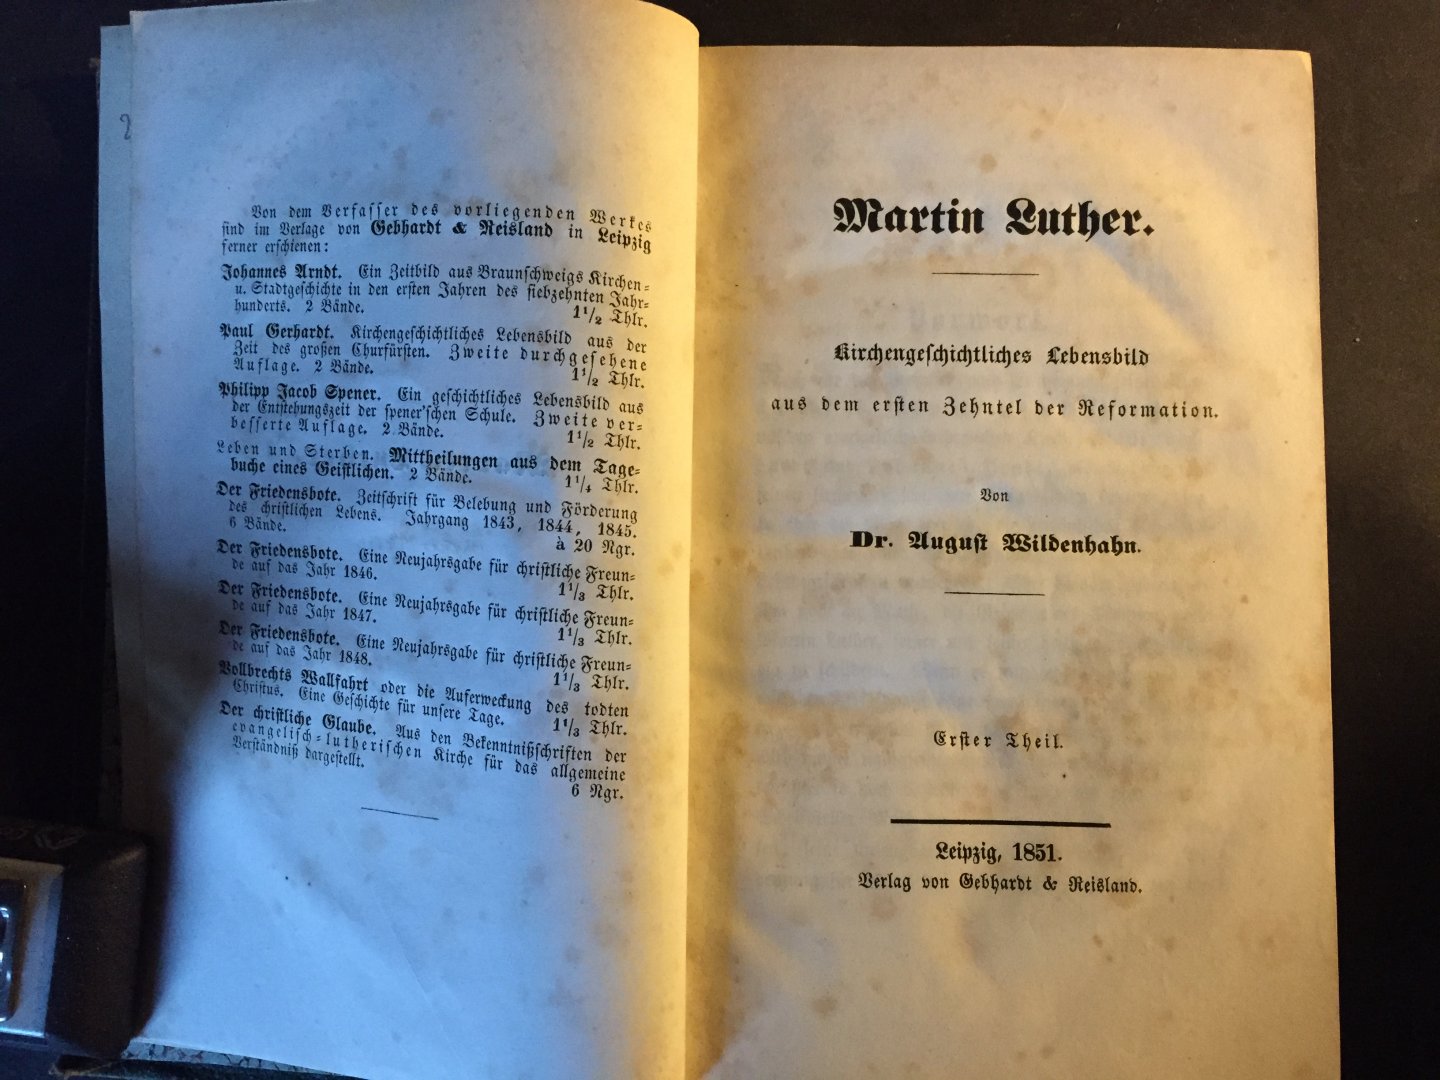 Wildenhahn, Dr. August - Martin Luther - Kirchengeschichtliches Lebensbild auf dem ersten Zehntel der Reformation